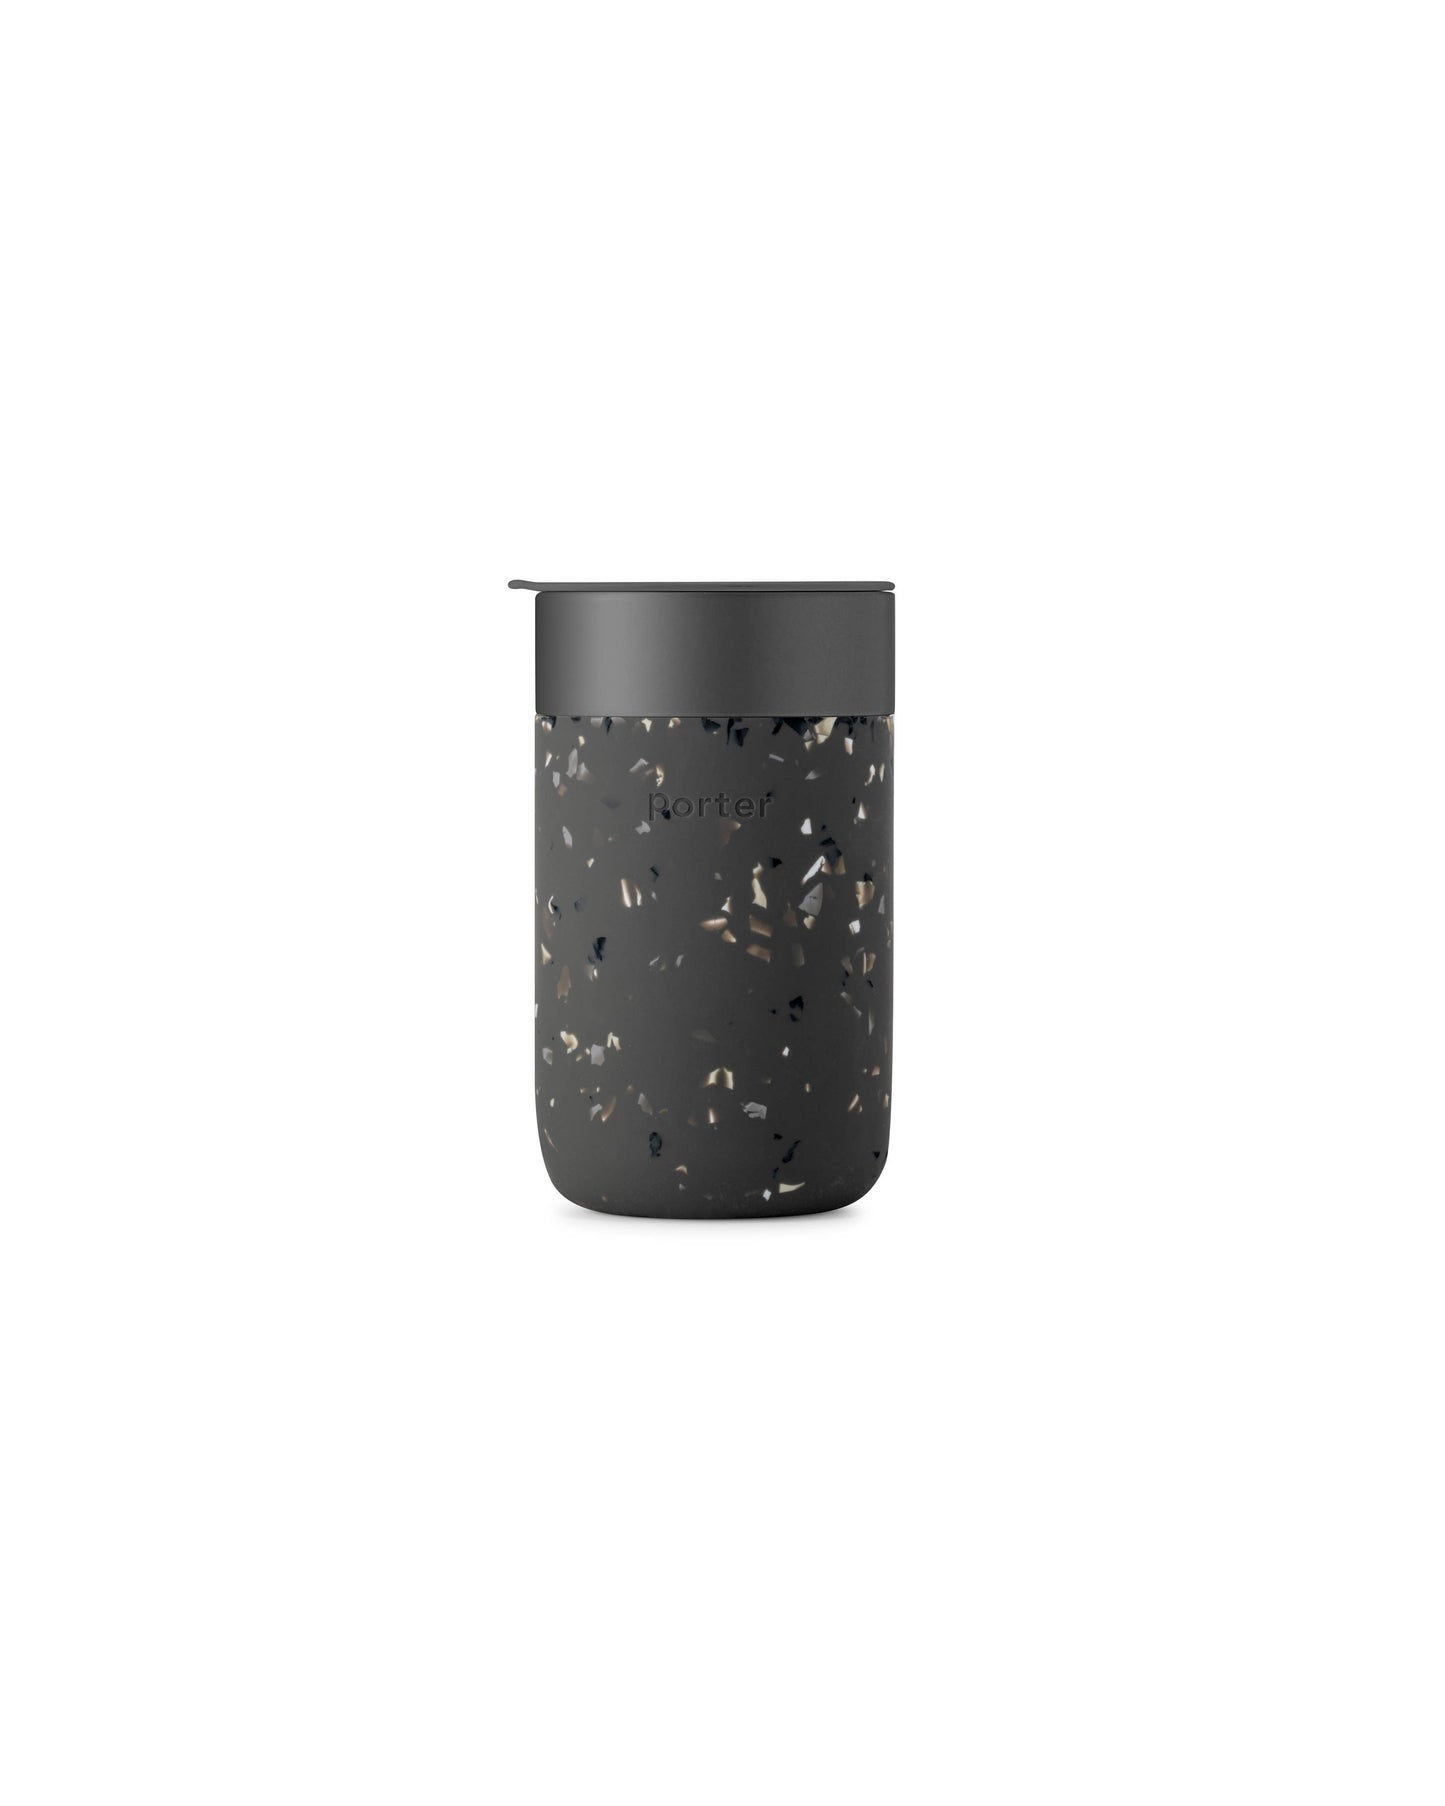 Porter Ceramic Reusable Coffee Mug 16oz: Charcoal